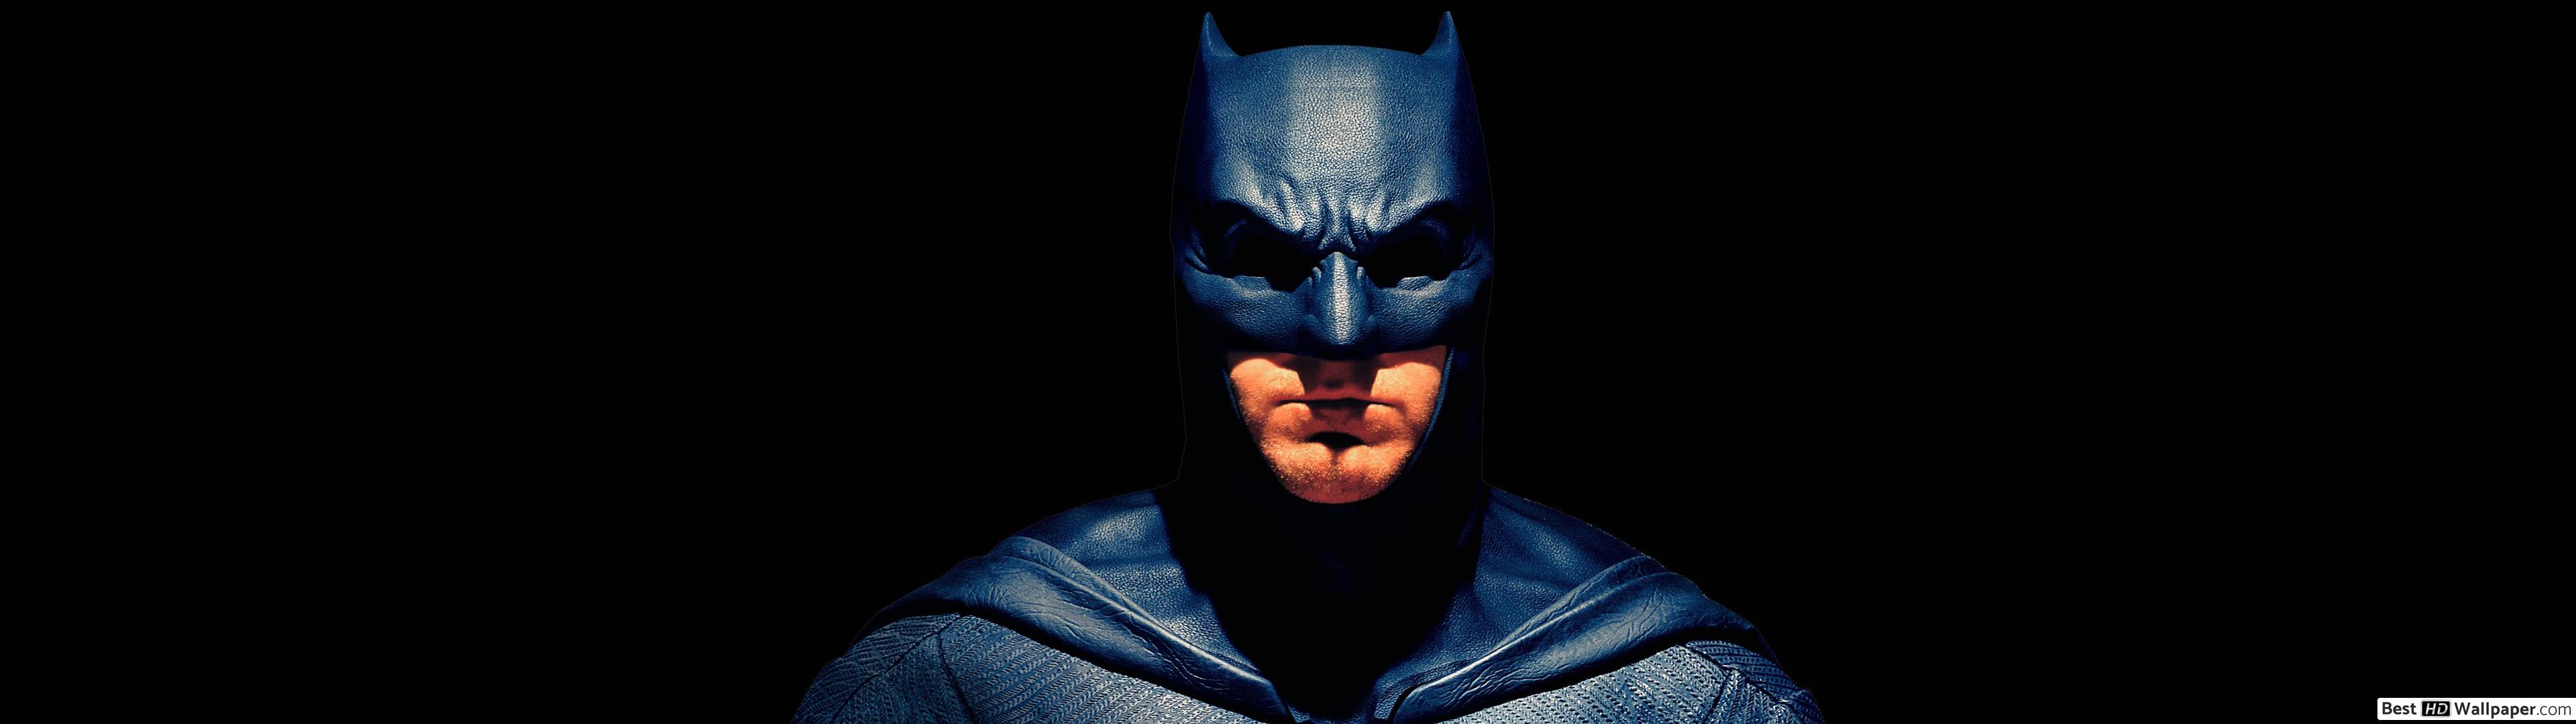 Justice League 2017 Batman - HD Wallpaper 